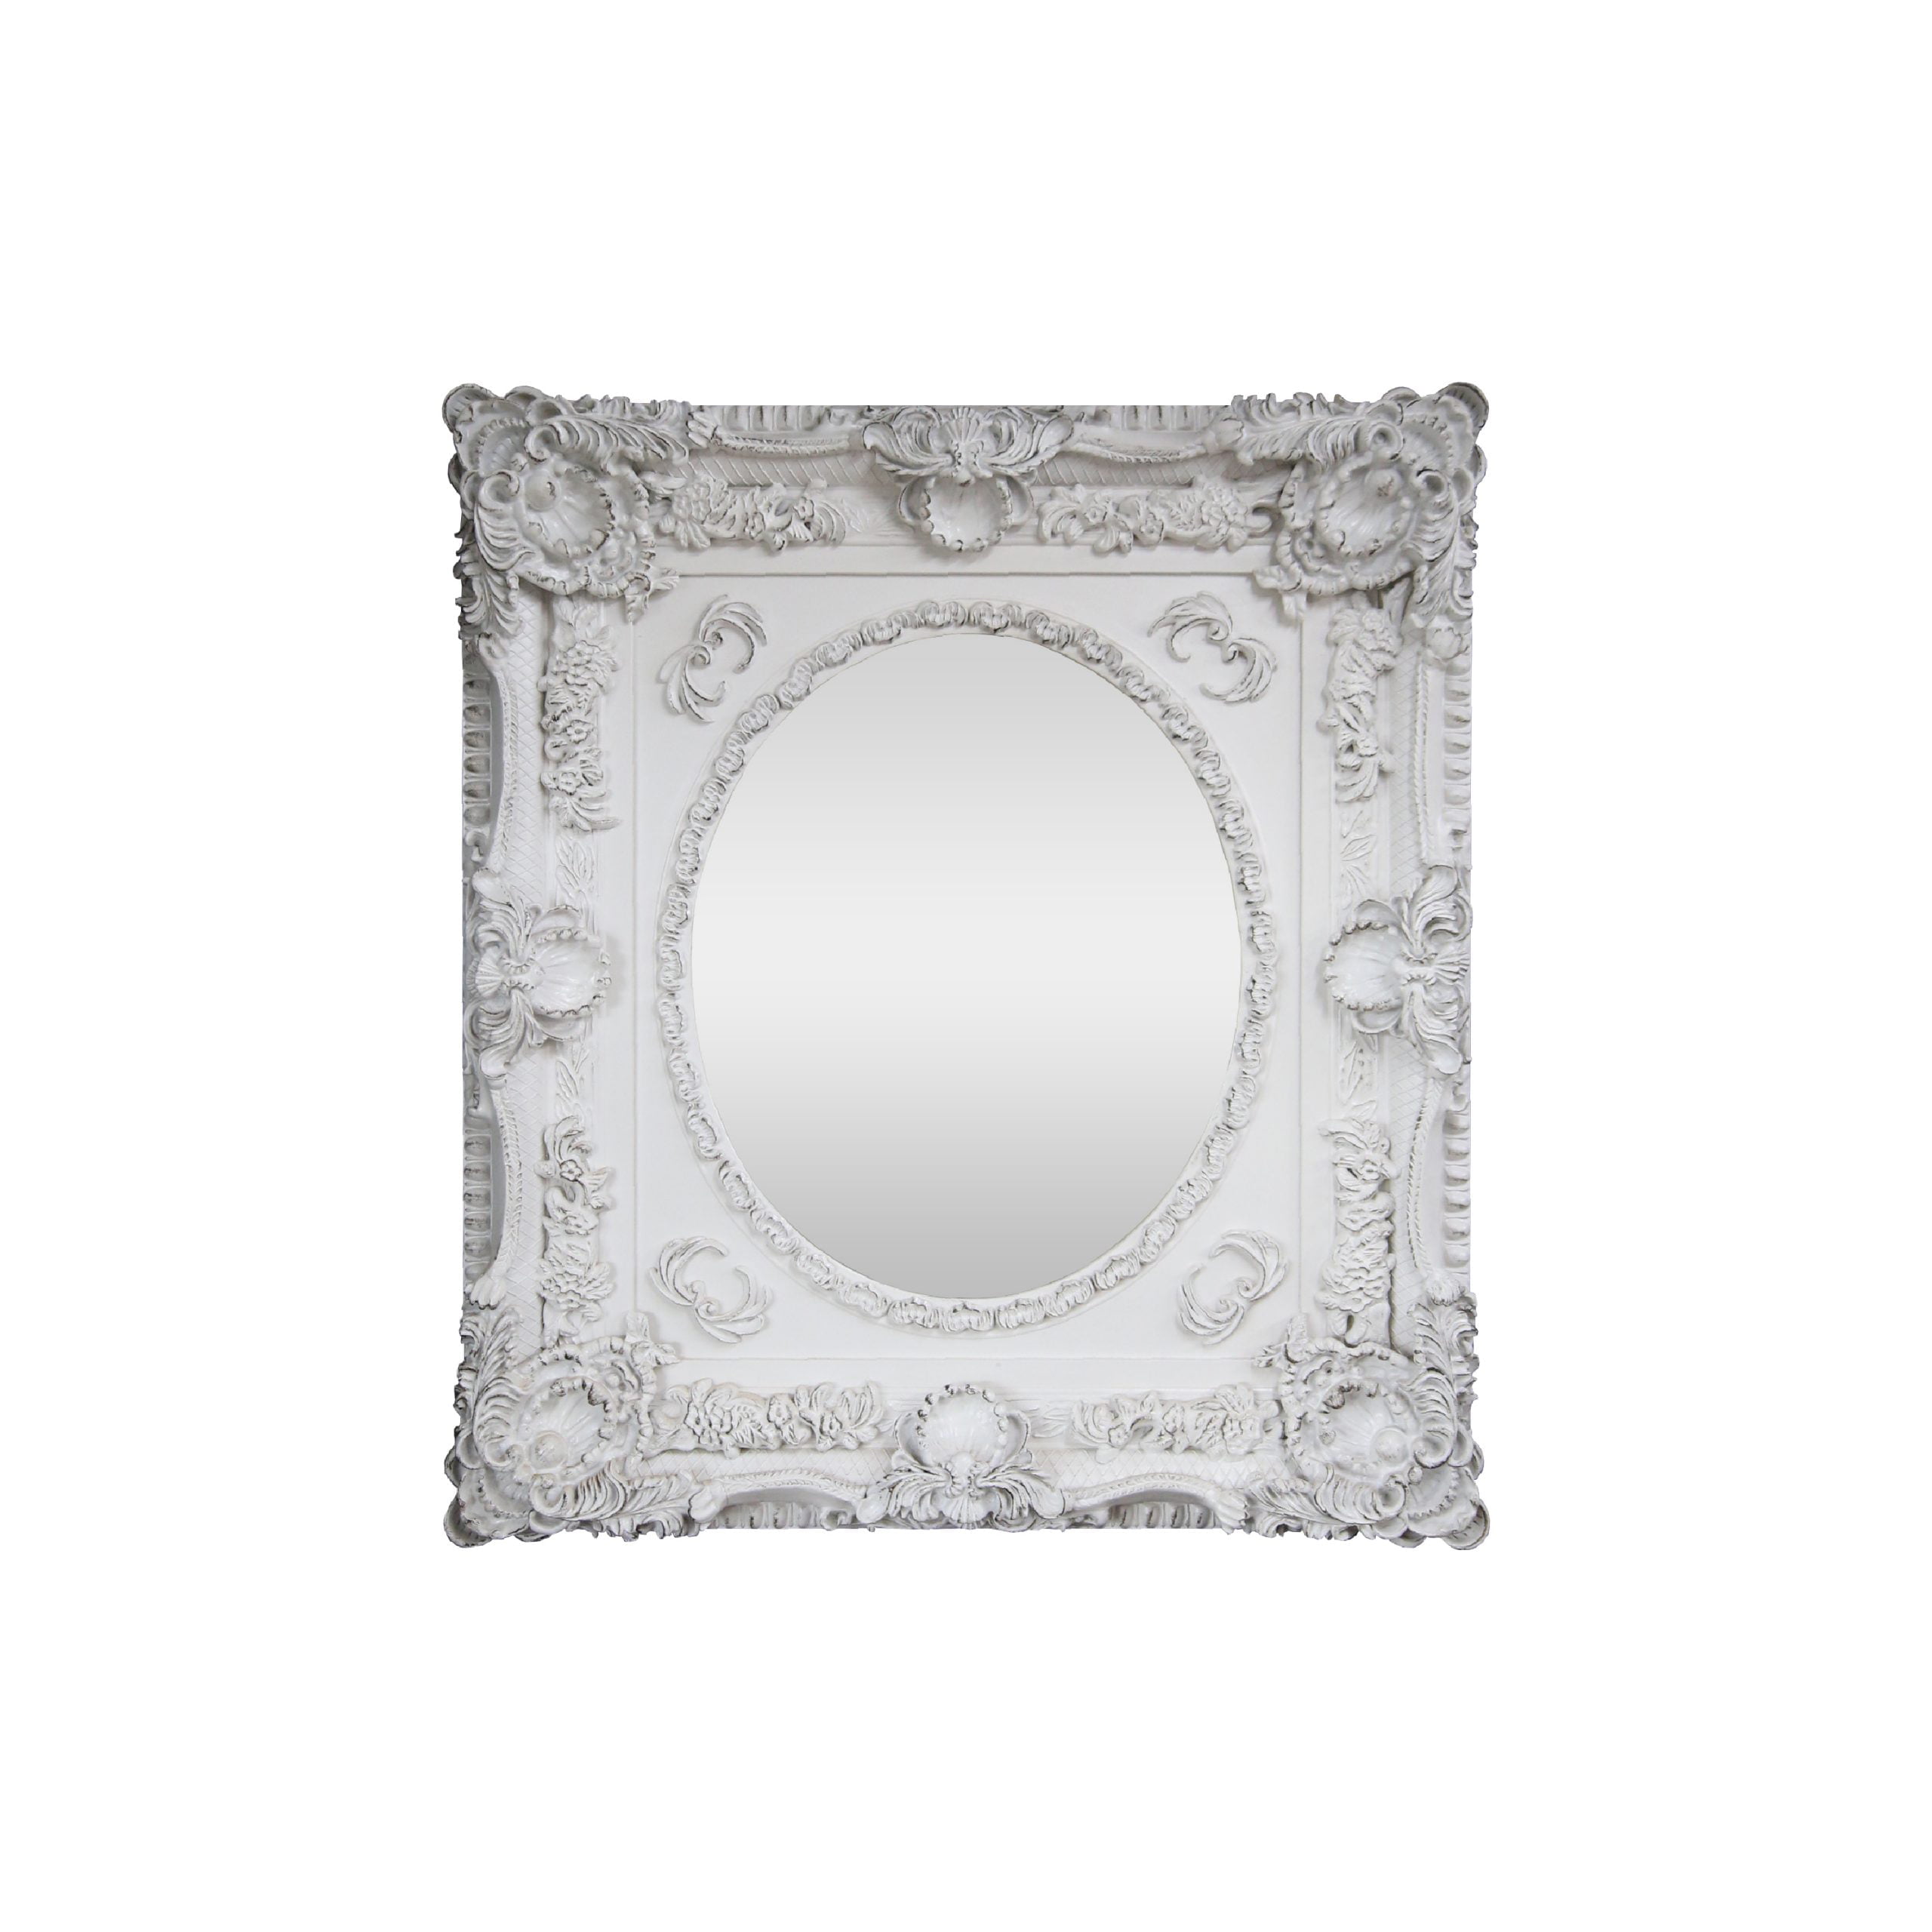 Square white Oval mirror